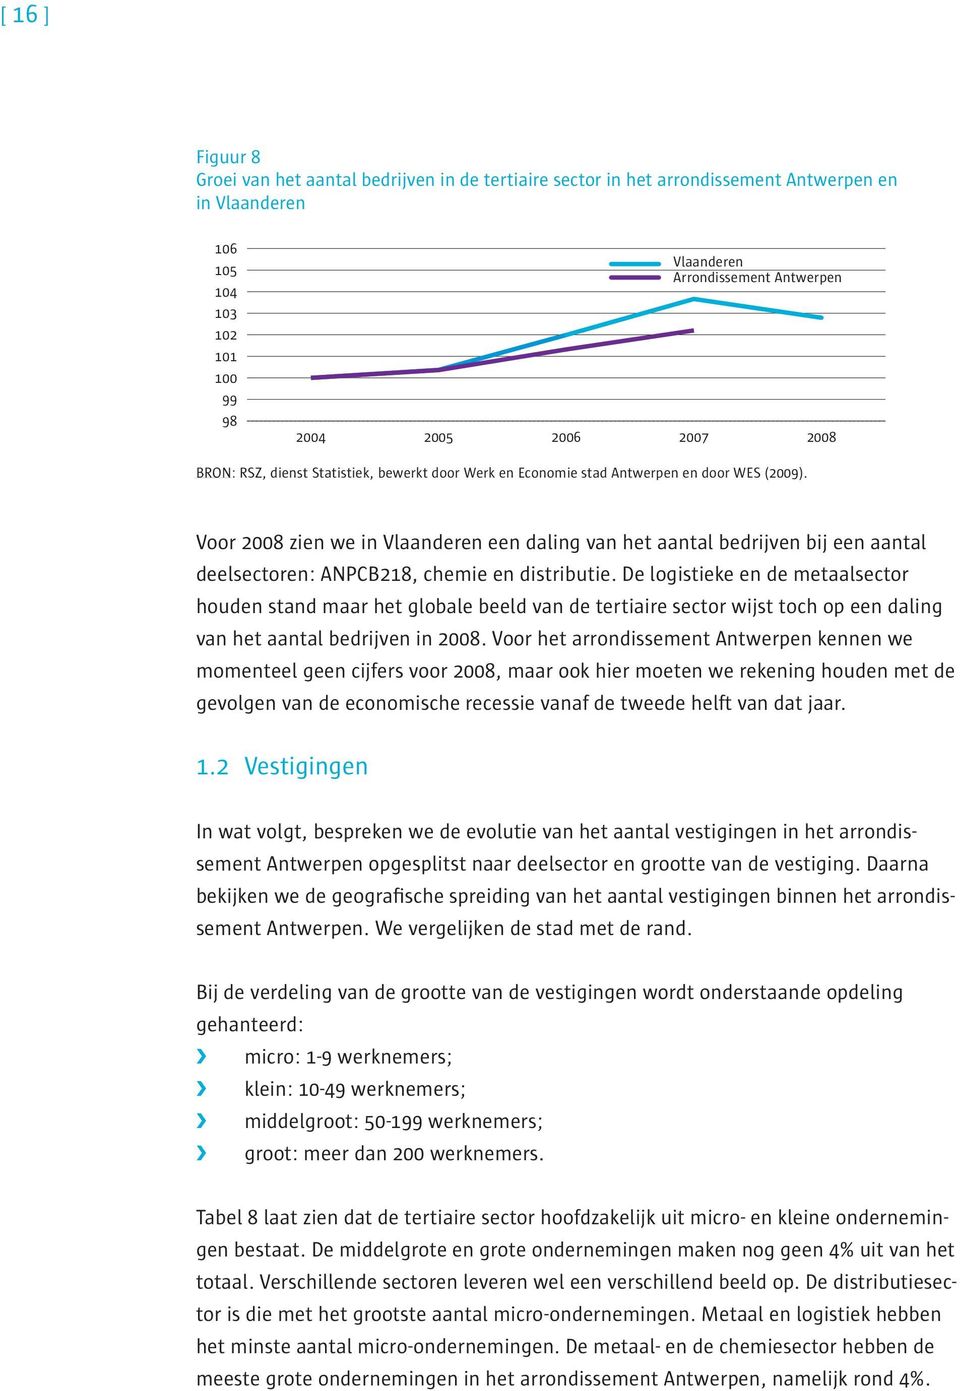 Voor 2008 zien we in Vlaanderen een daling van het aantal bedrijven bij een aantal deelsectoren: ANPCB218, chemie en distributie.